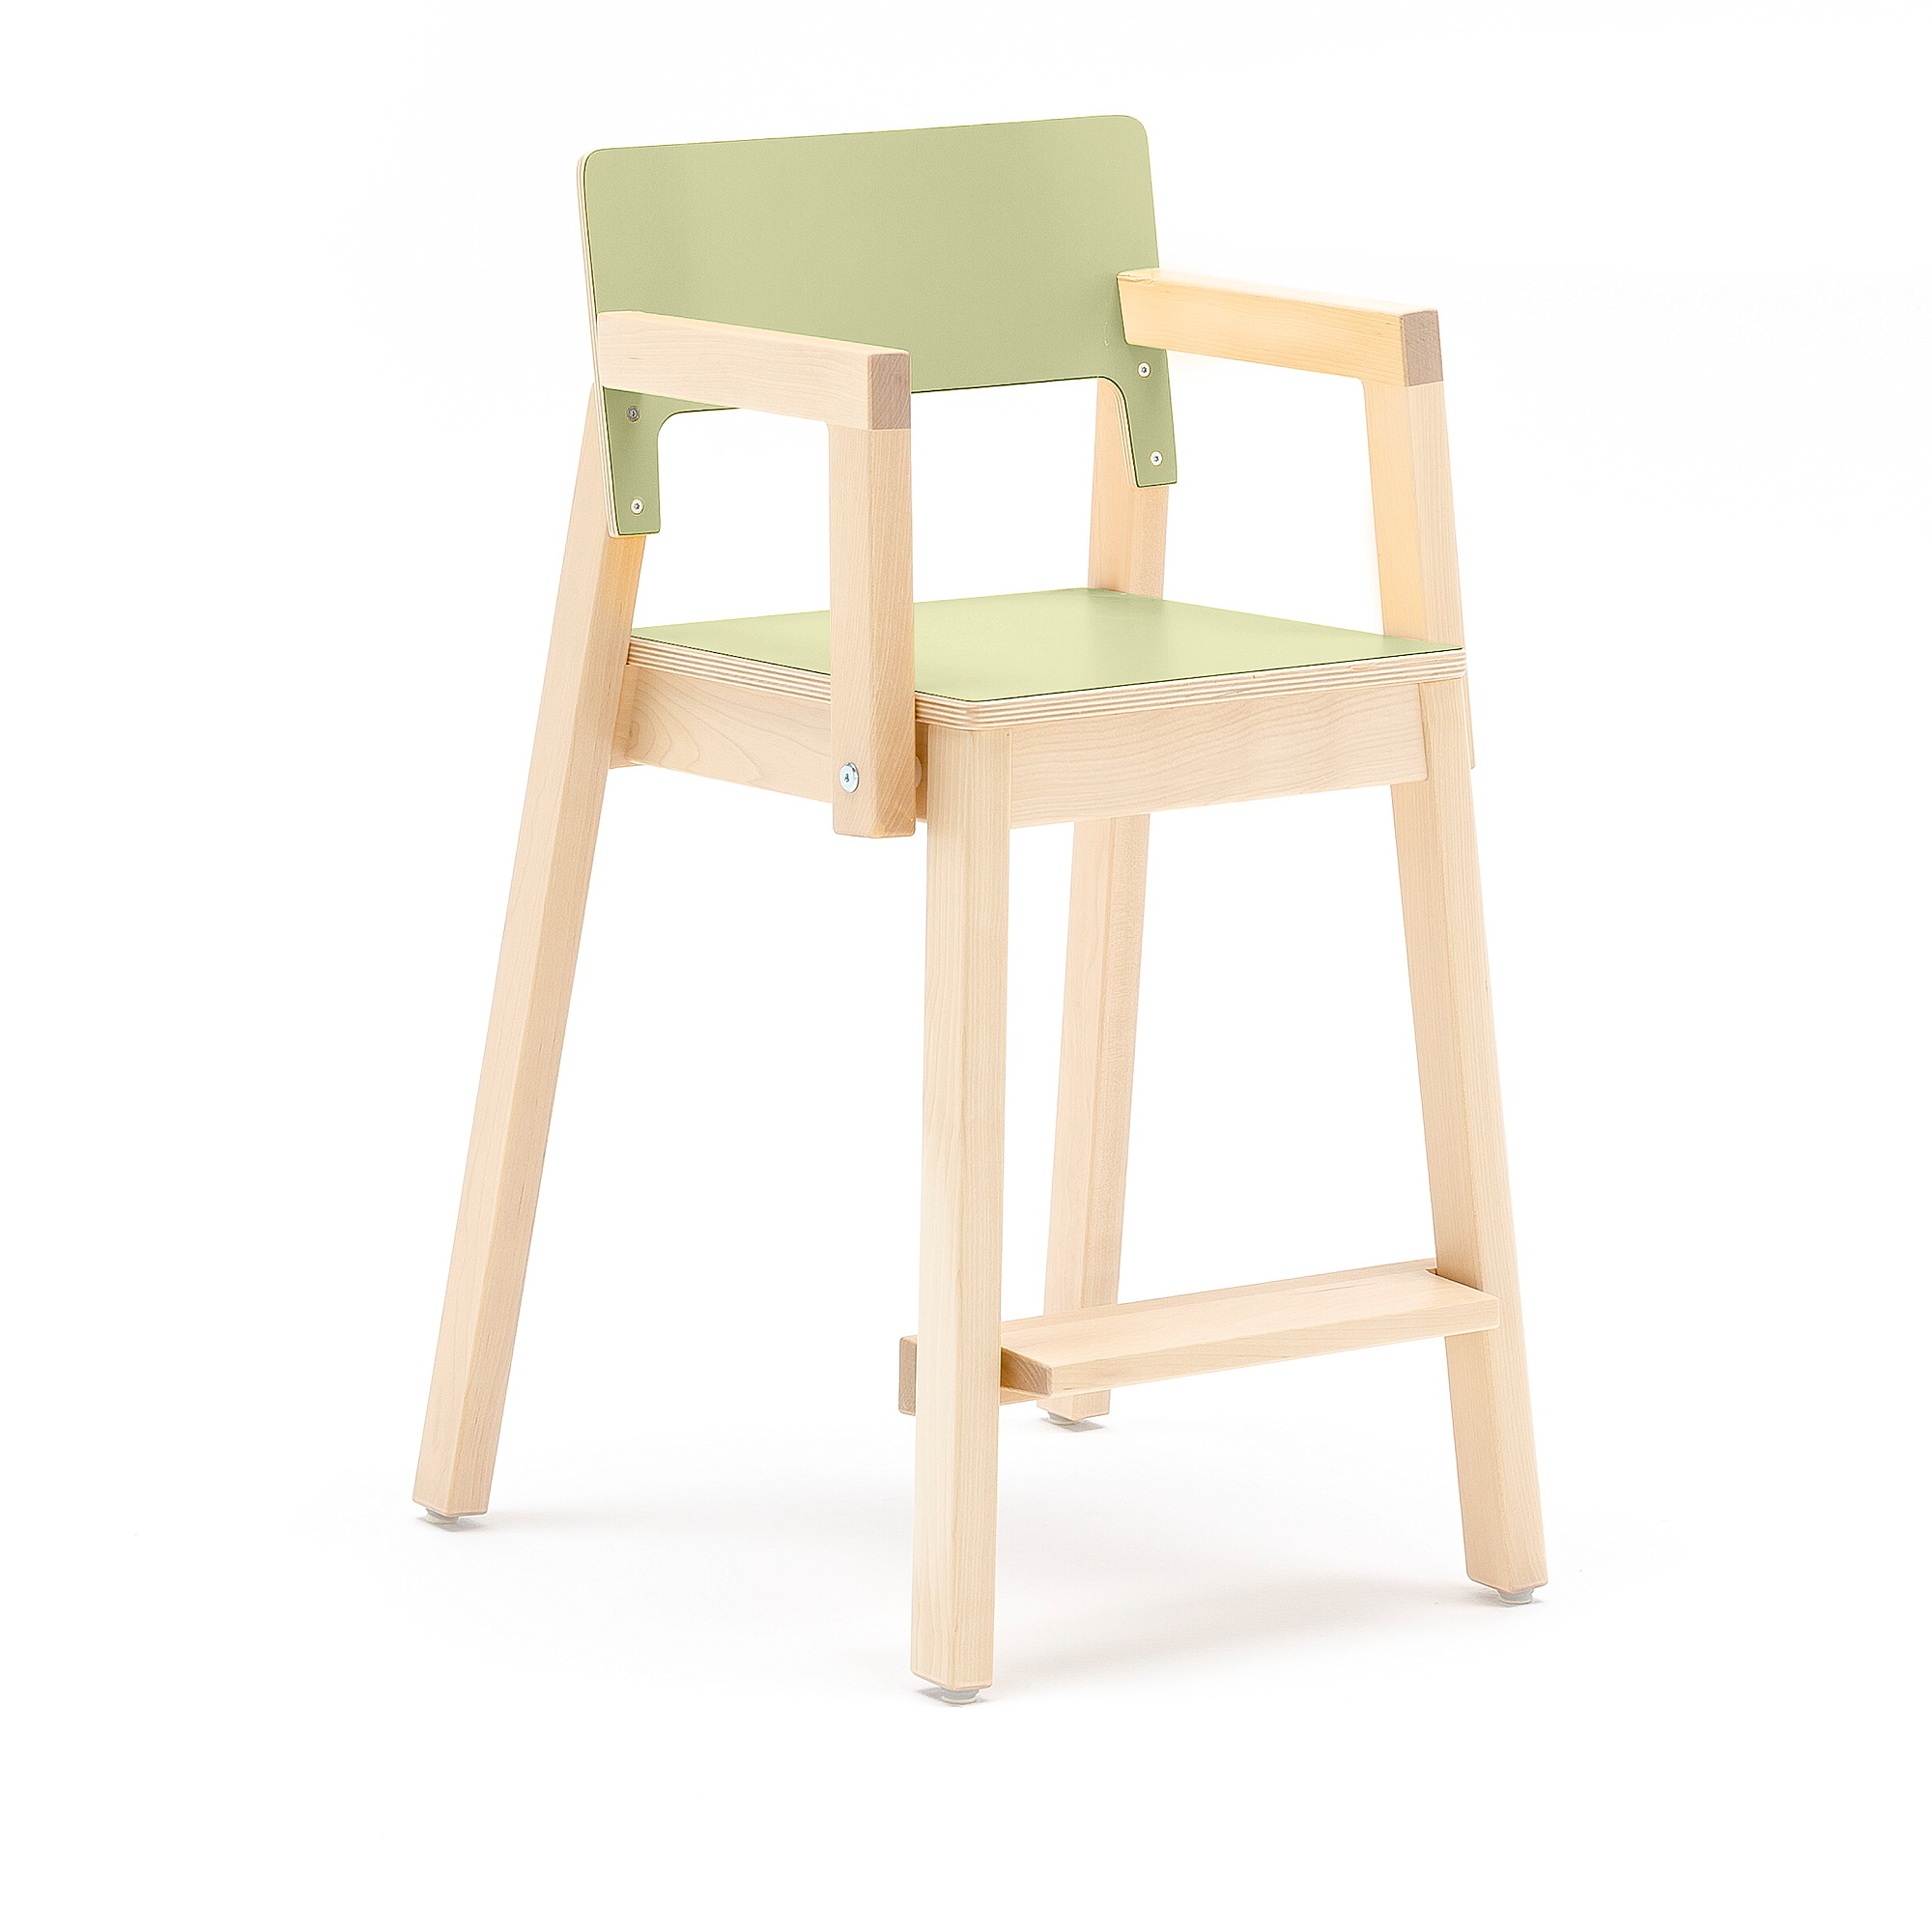 Vysoká dětská židle LOVE, s područkami, výška 500 mm, bříza, zelená